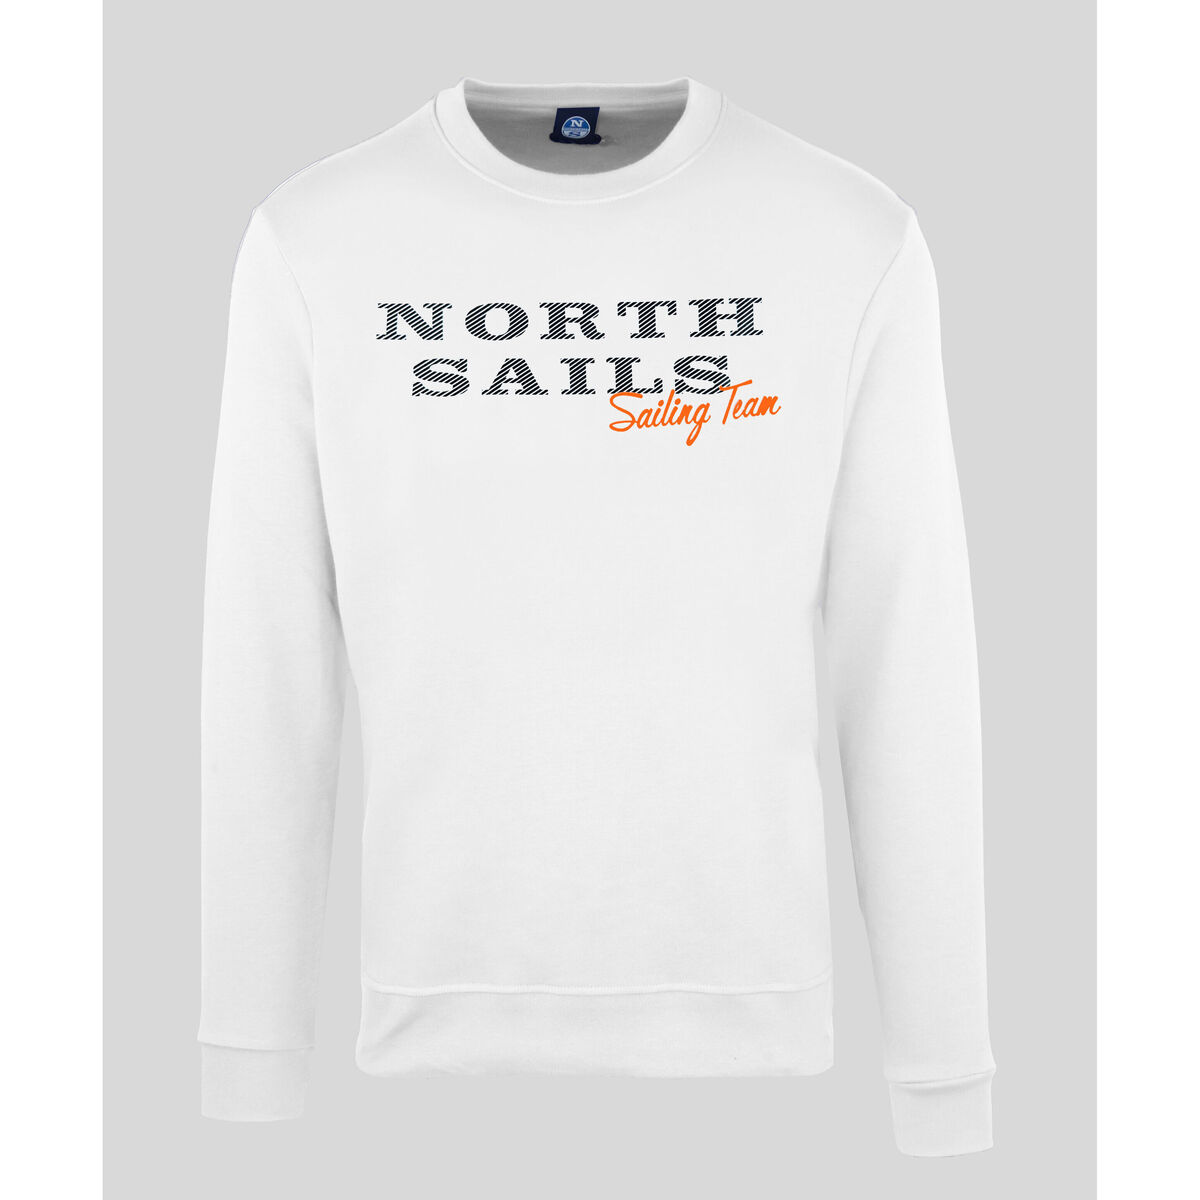 textil Herr Sweatshirts North Sails - 9022970 Vit